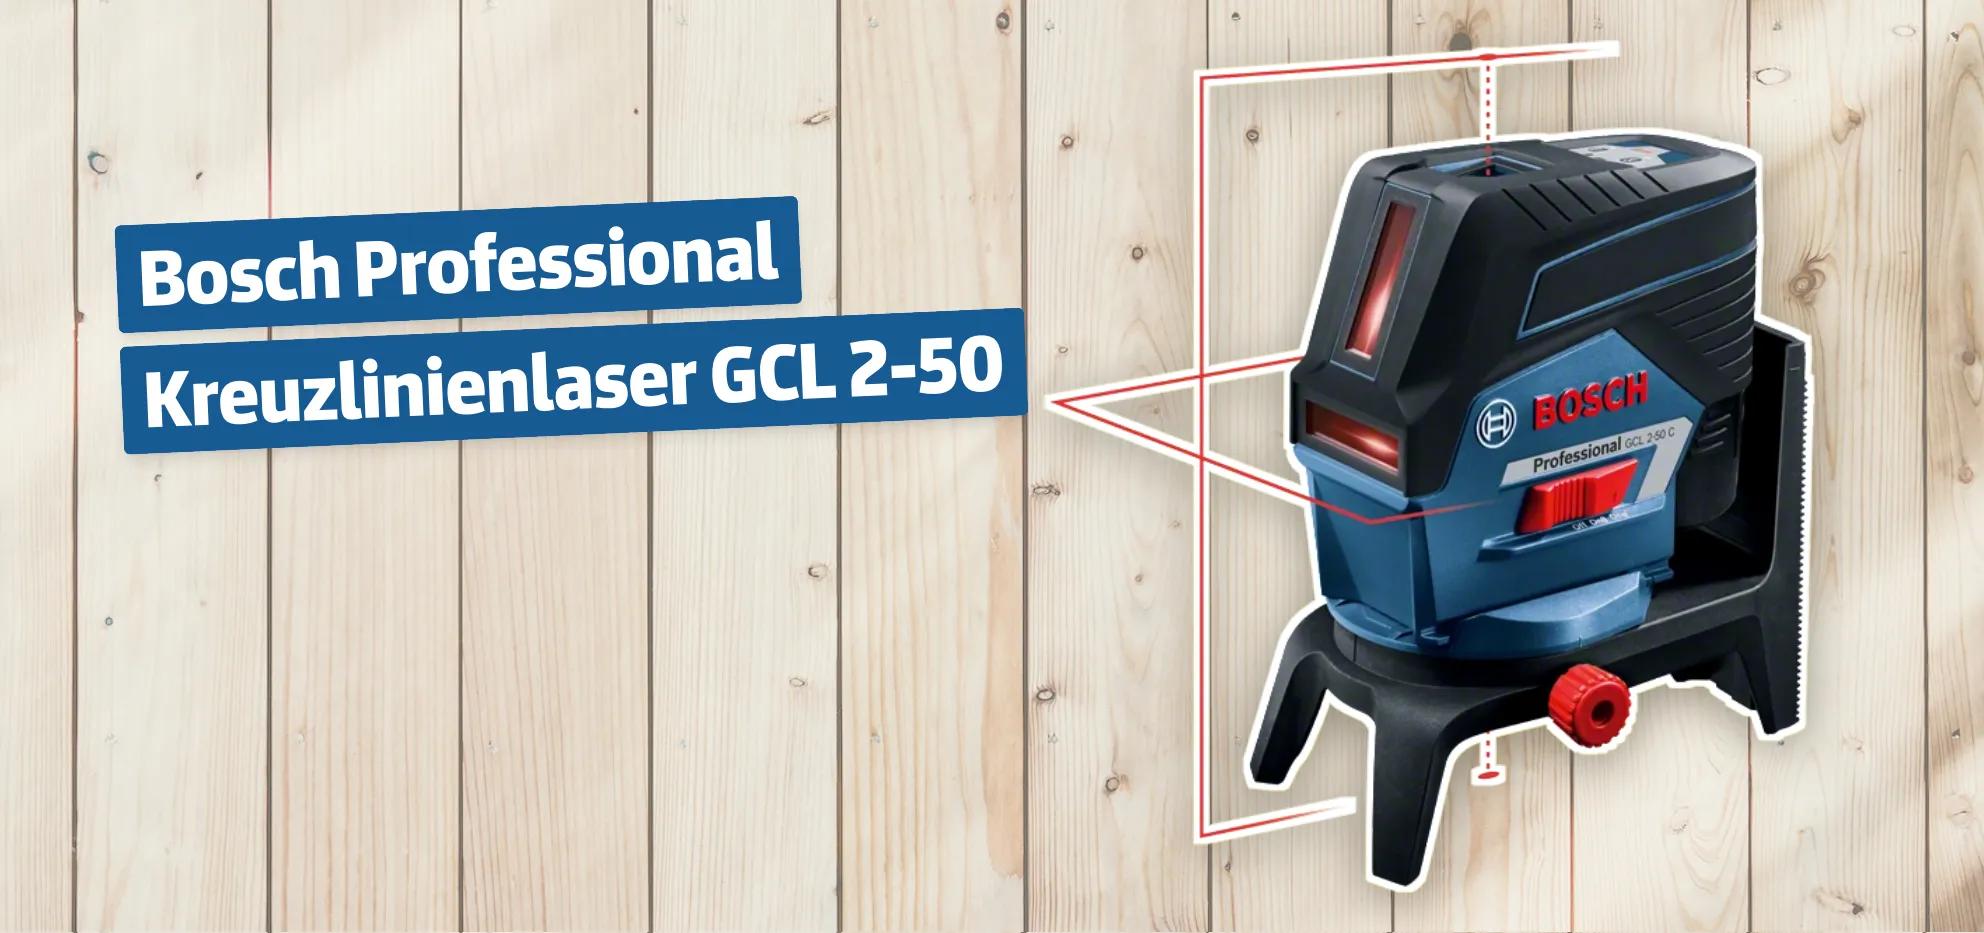 Bosch Professional Kreuzlinienlaser GCL 2-50